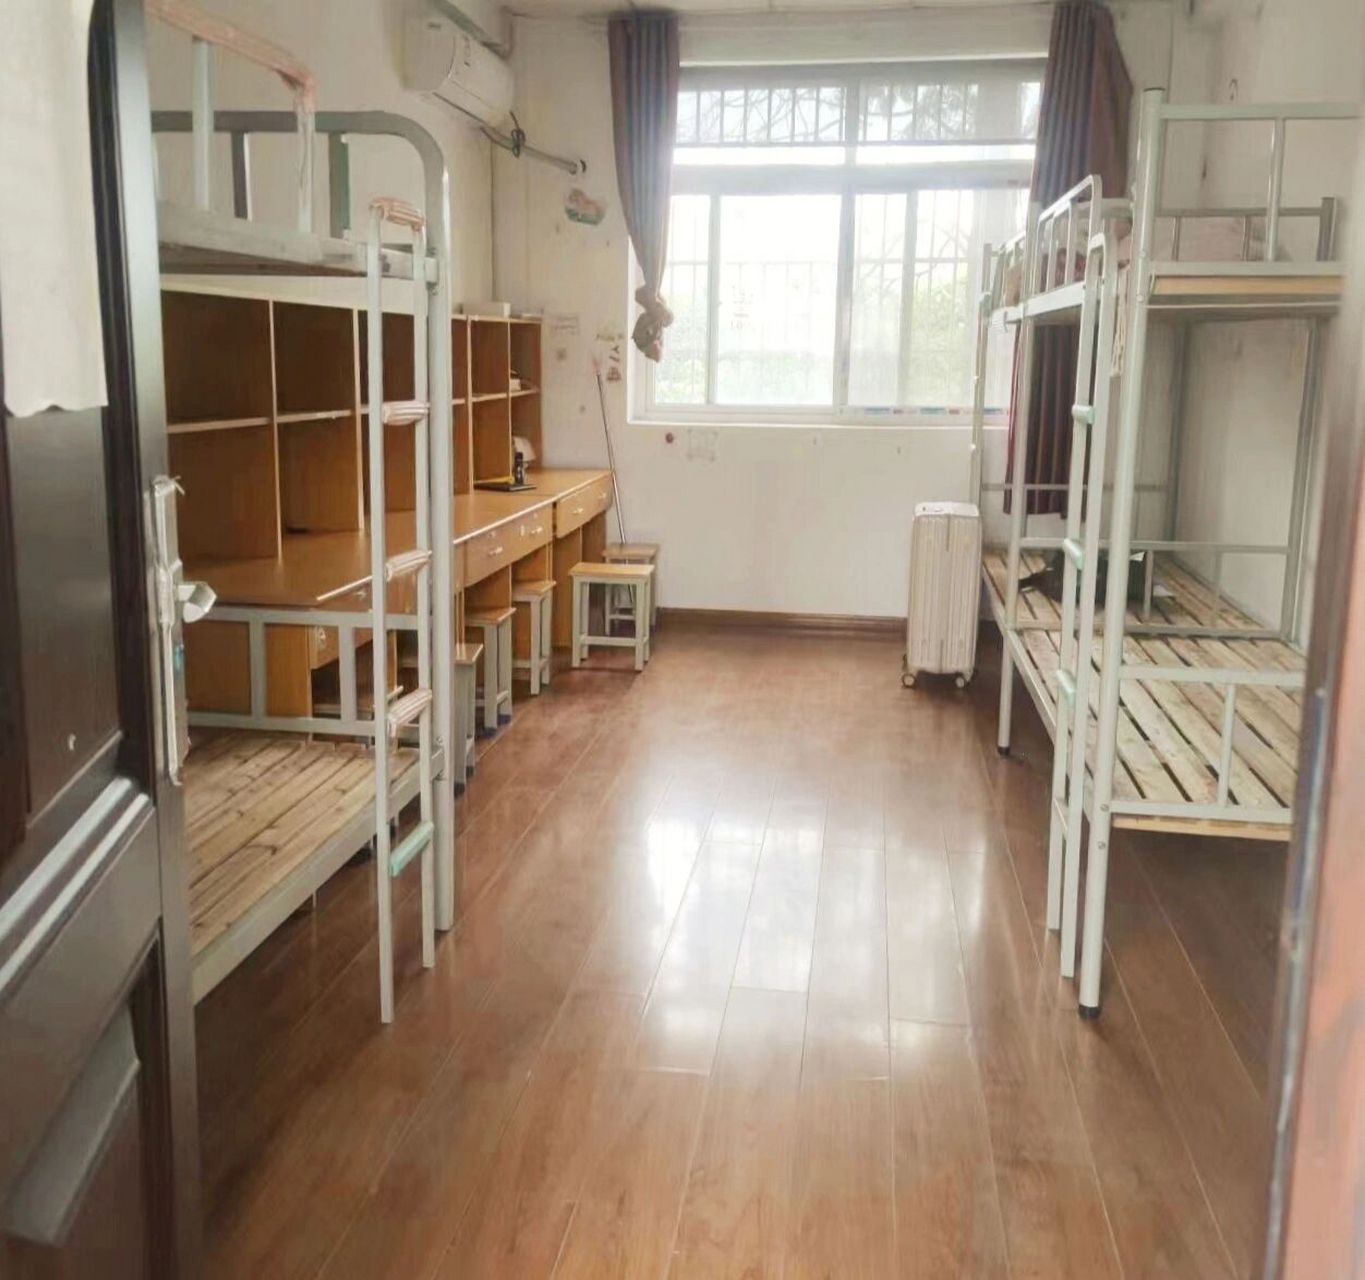 蚌埠学院应用技术学院的住宿环境! 宿舍有六人间,四人间,随机分配!